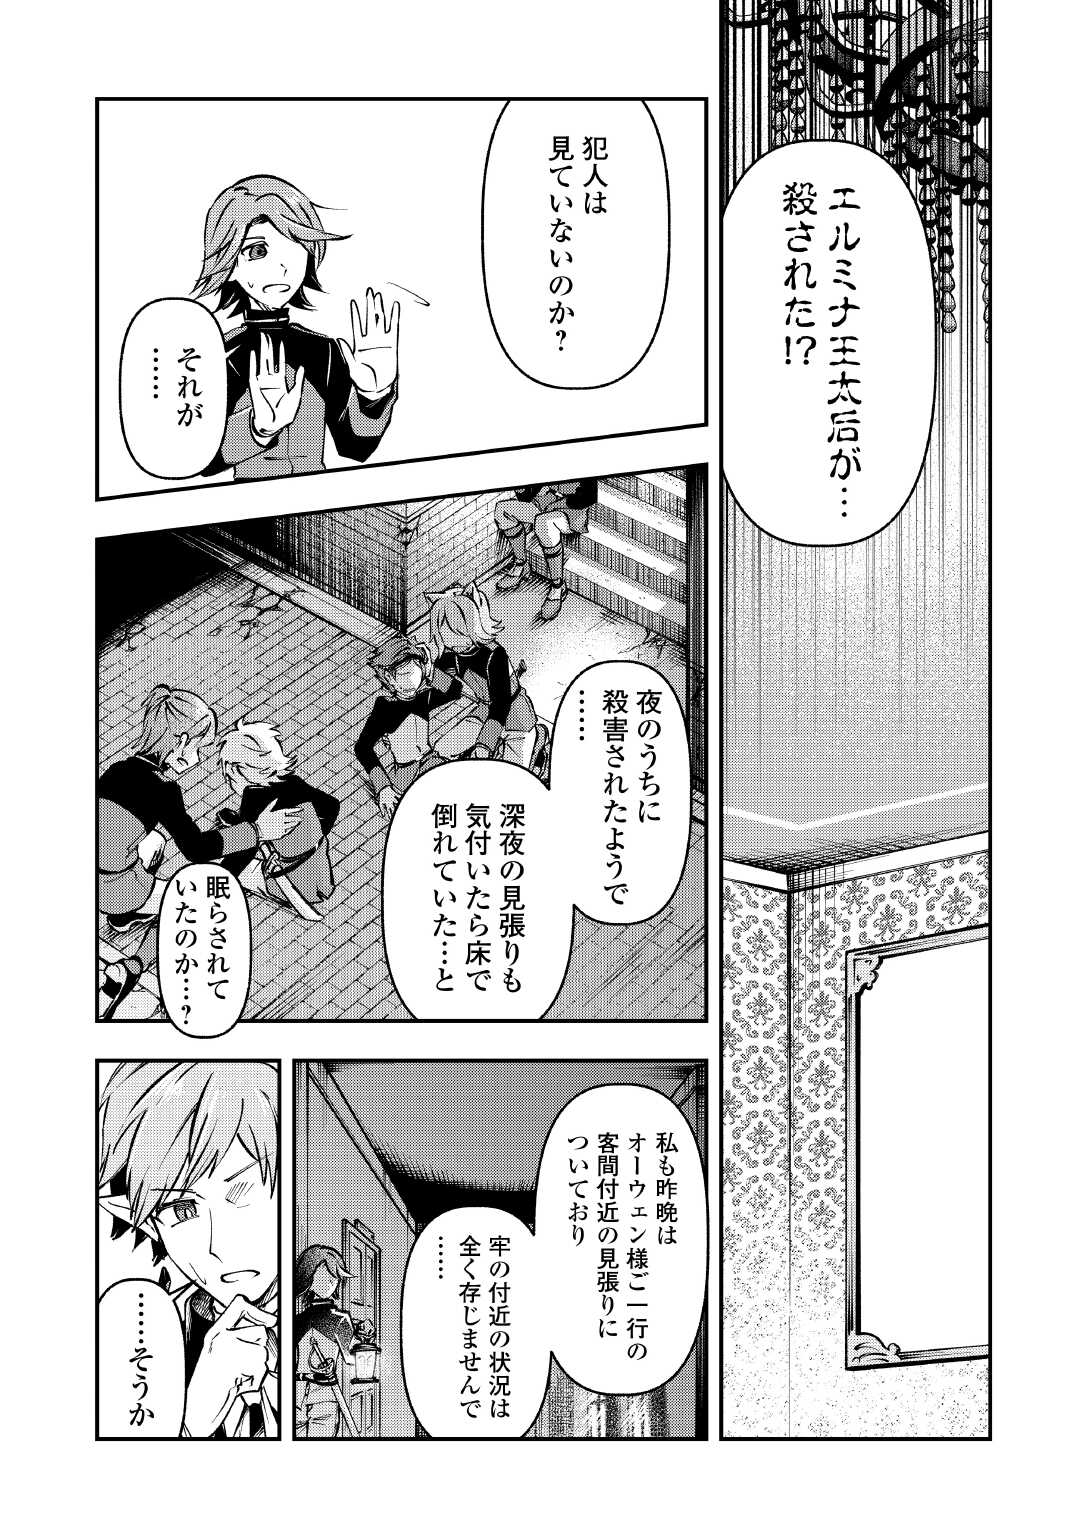 Osanago wa Saikyou no Tamer da to Kizuiteimasen! - Chapter 12 - Page 1